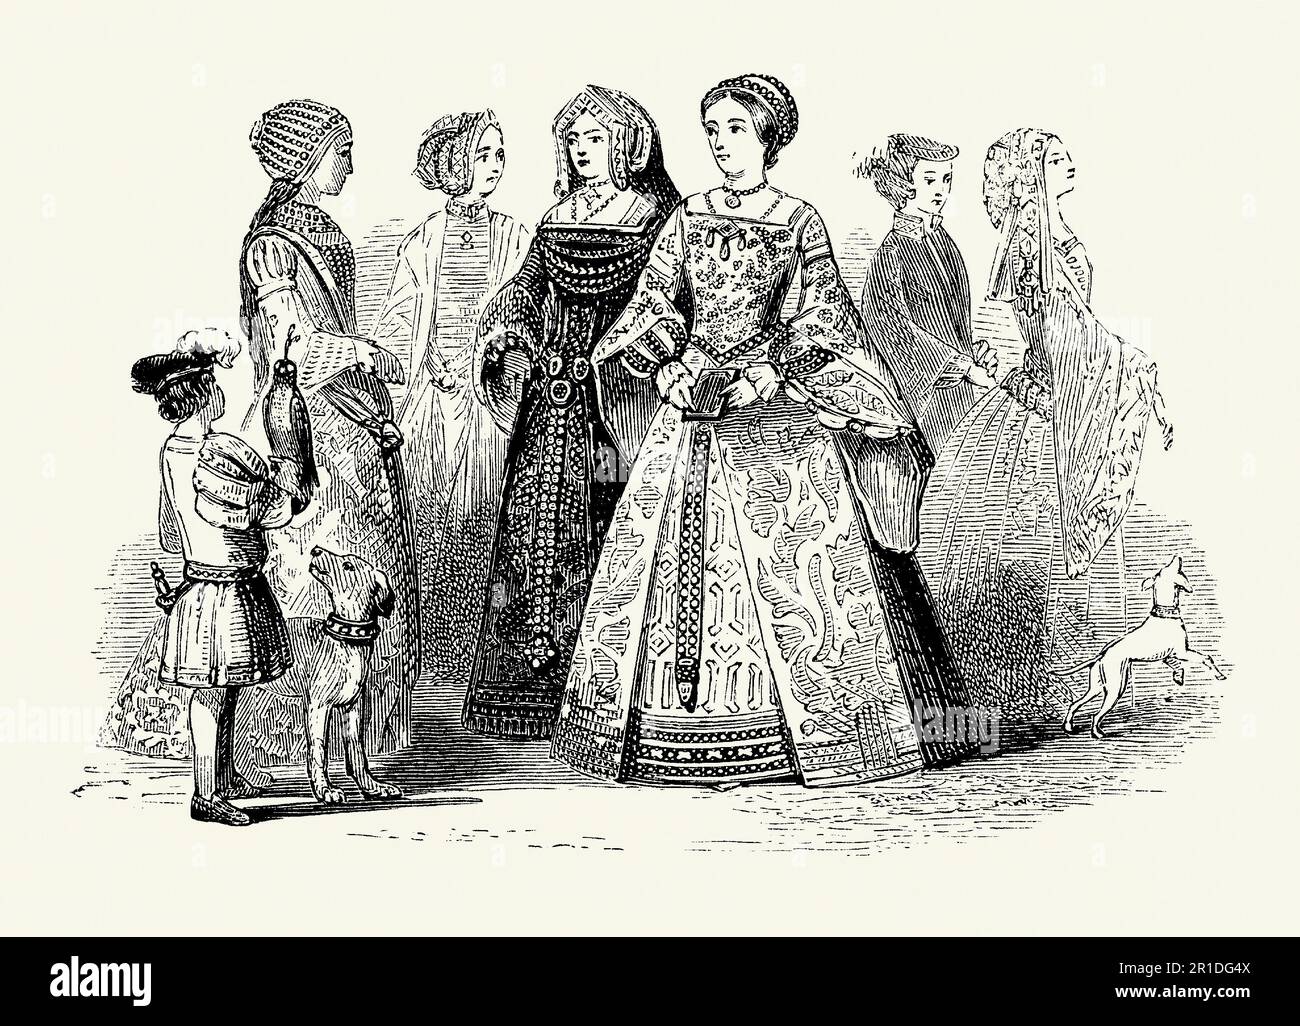 Une vieille gravure de vêtements portés par des femmes à l'époque Tudor en Angleterre. Le style de la robe date de la première partie du 16th siècle sous le règne d'Edward VI (1509-1547). Les vêtements des femmes comportaient souvent des robes longues étaient souvent brodées de bijoux. Les tours de cou carrés et les manches suspendues lâches étaient populaires. Pour les femmes, les cheveux ont souvent été tressés. Le harnais comprenait des bonnets et des turbans brodés. Cette tenue aurait été portée par ceux en société avec de l'argent, le génie débarqué, la noblesse et d'autres liés à la cour royale. Banque D'Images